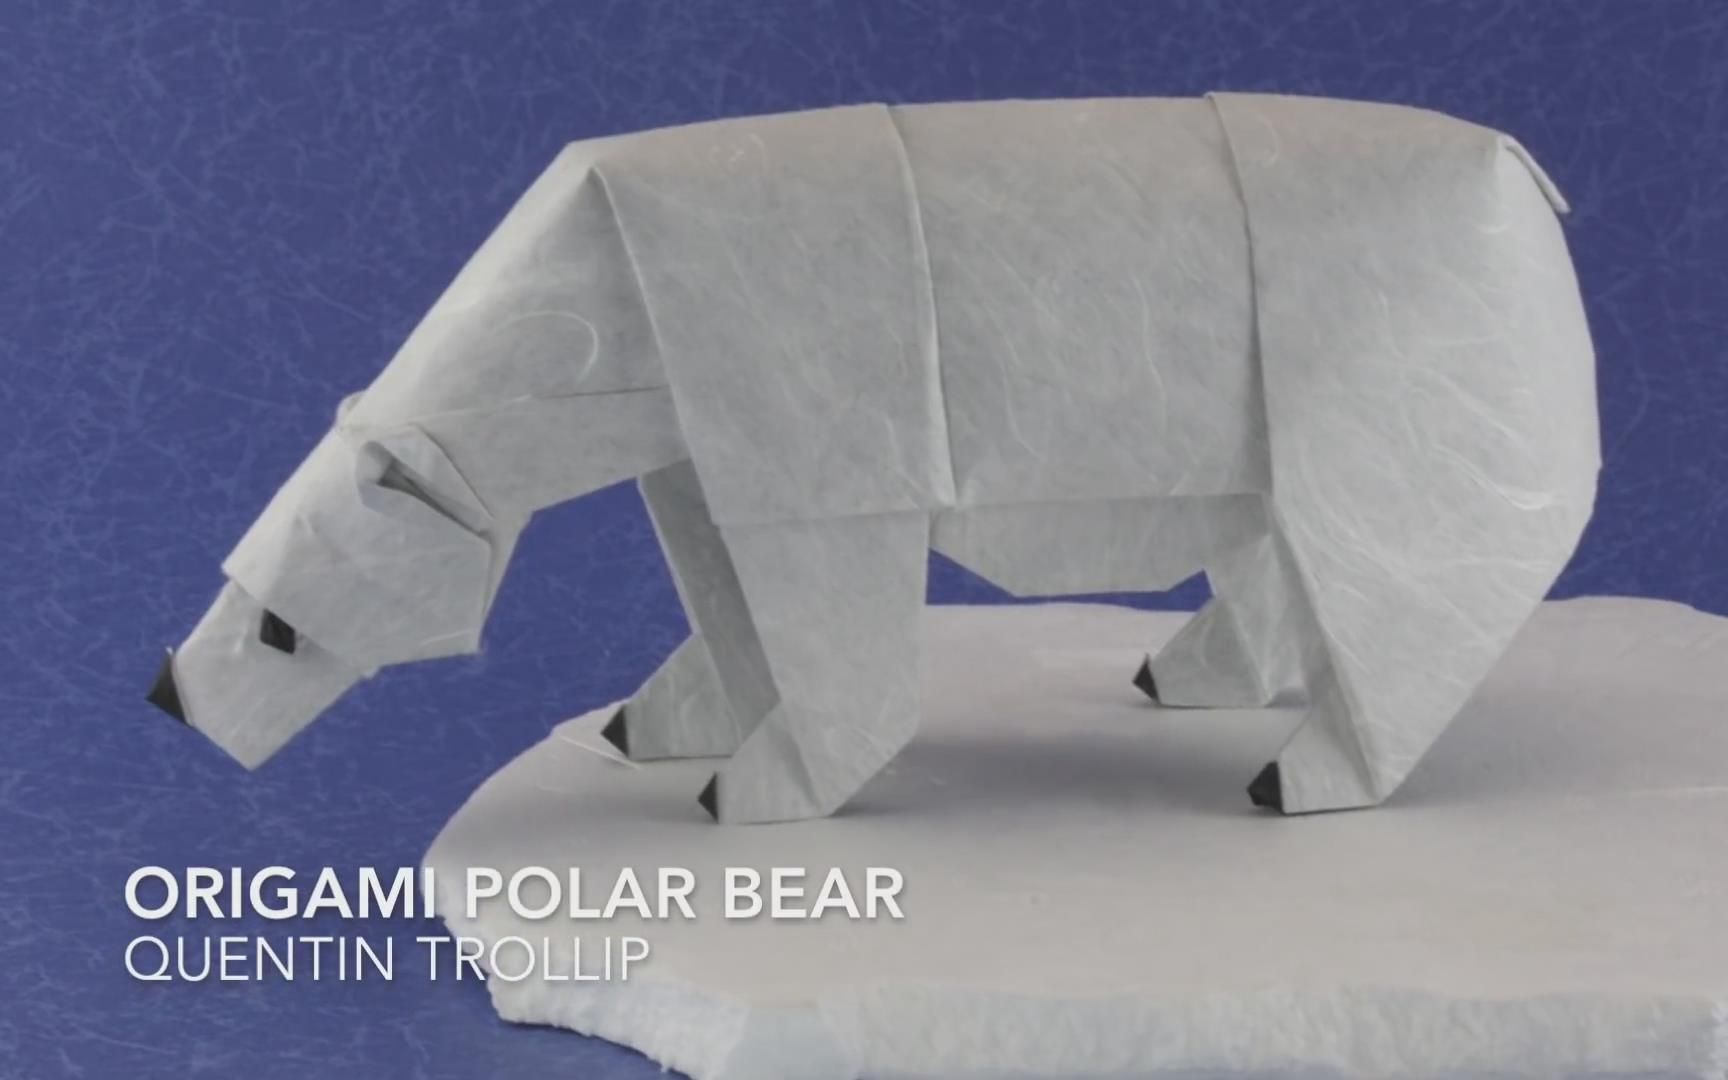 【折纸搬运】北极熊 设计:昆汀 视频制作:jm